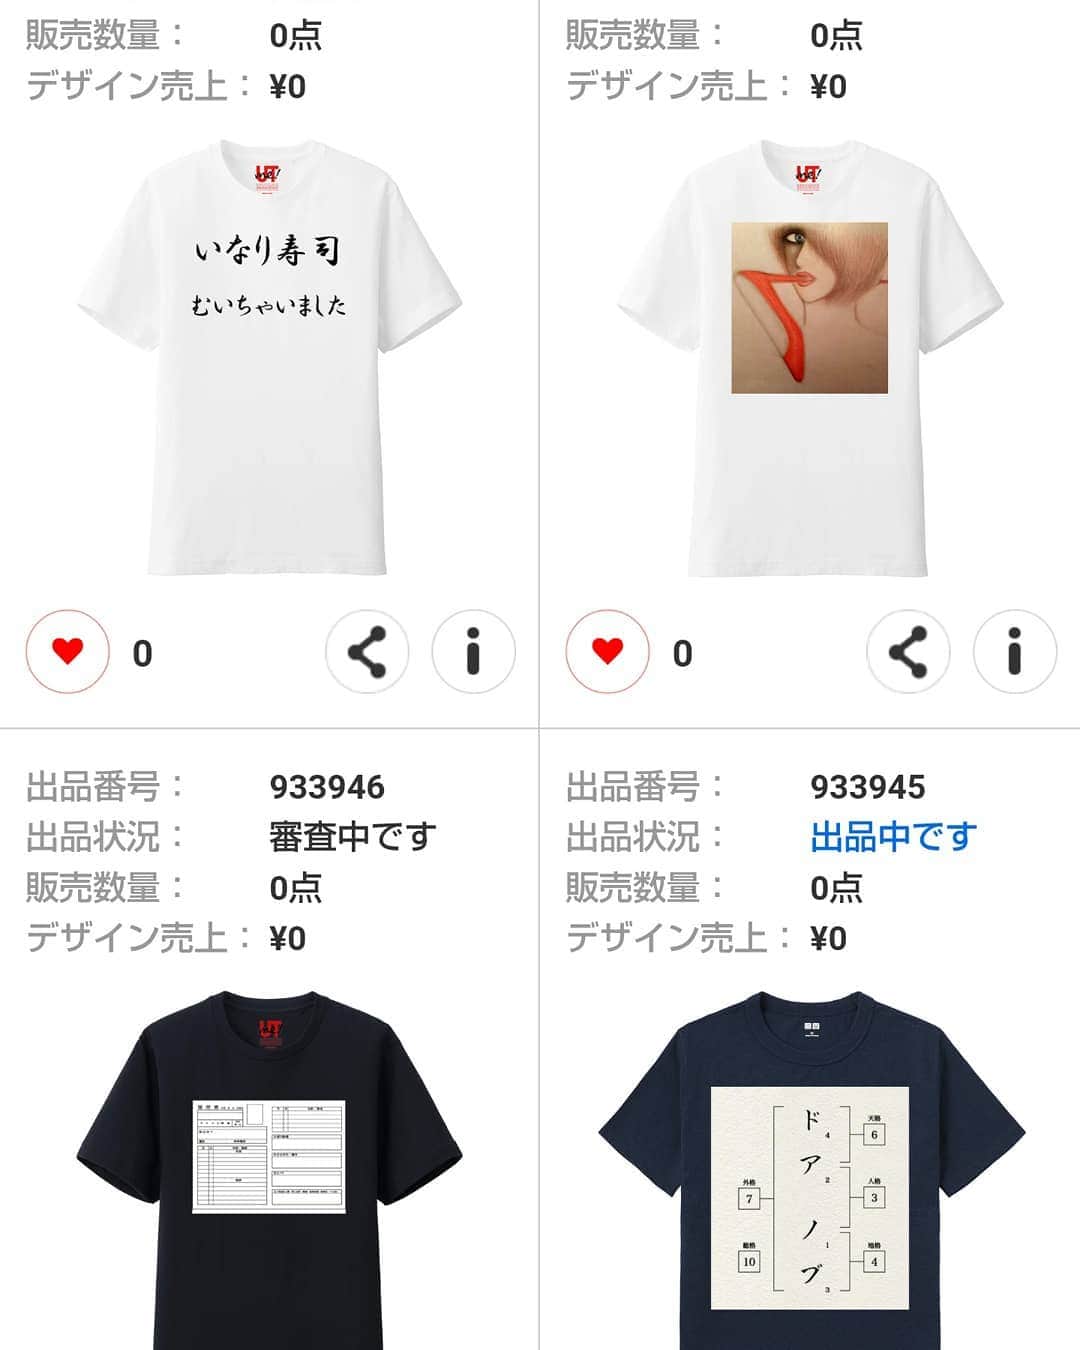 松原義和のインスタグラム：「自分でデザインしたTシャツをつくってみました。よければお願い致します。 https://utme.uniqlo.com/jp/front/market/my?locale=ja 僕の考えたTシャツ #風藤松原#松原義和#Tシャツ#ネタ#小ネタ#ファッション#お笑い#笑い#fashion#love#shirt#gu#ユニクロ#japanese#white#洋服#interest#clothes#interesting#漢字#follow#picture」